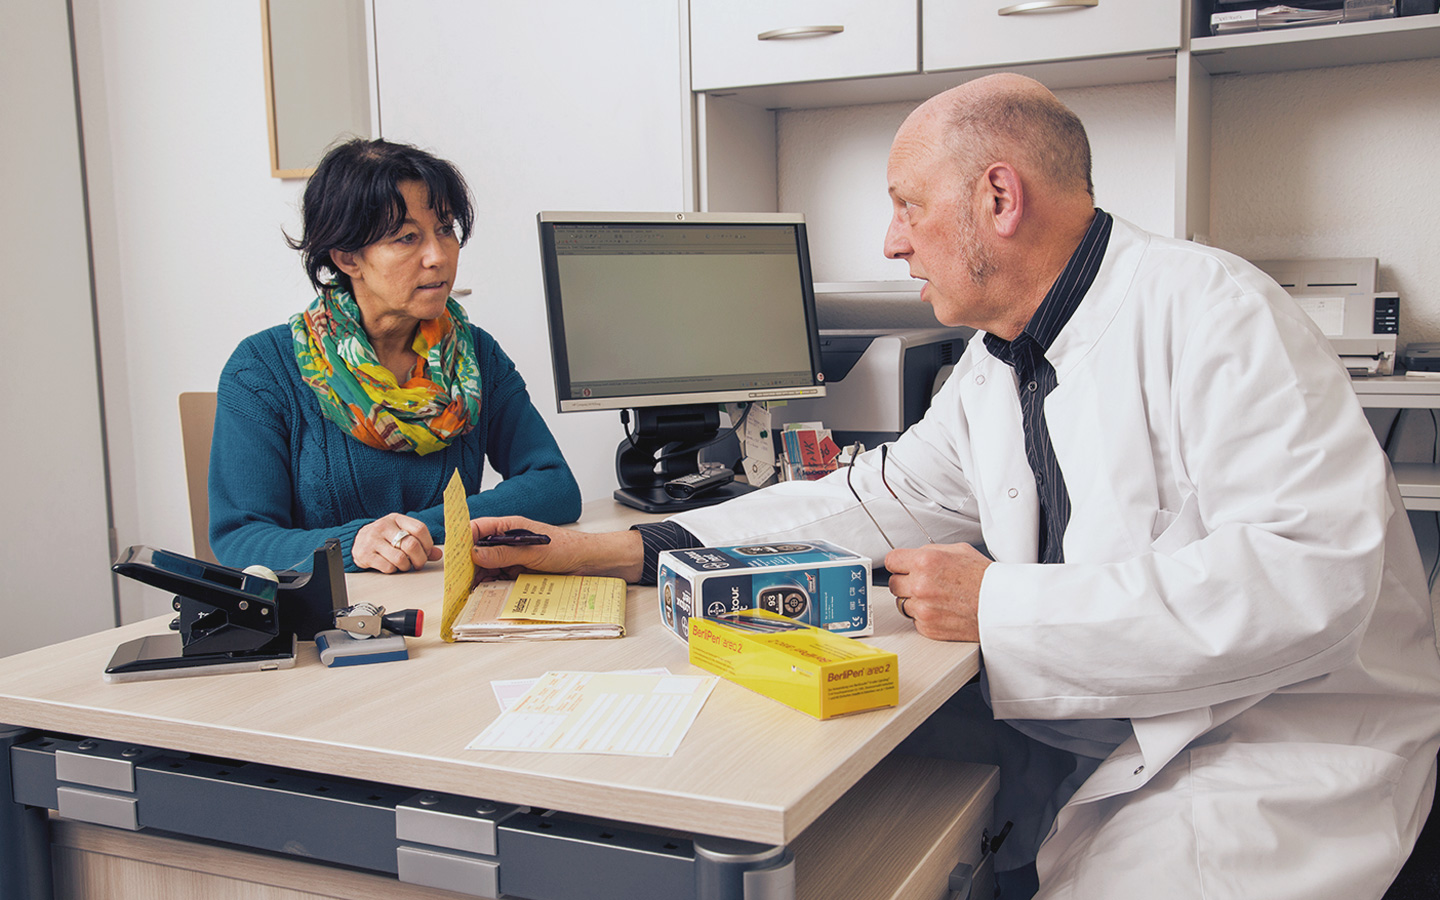 Foto: eine Patientin wird vom einem Arzt beraten.